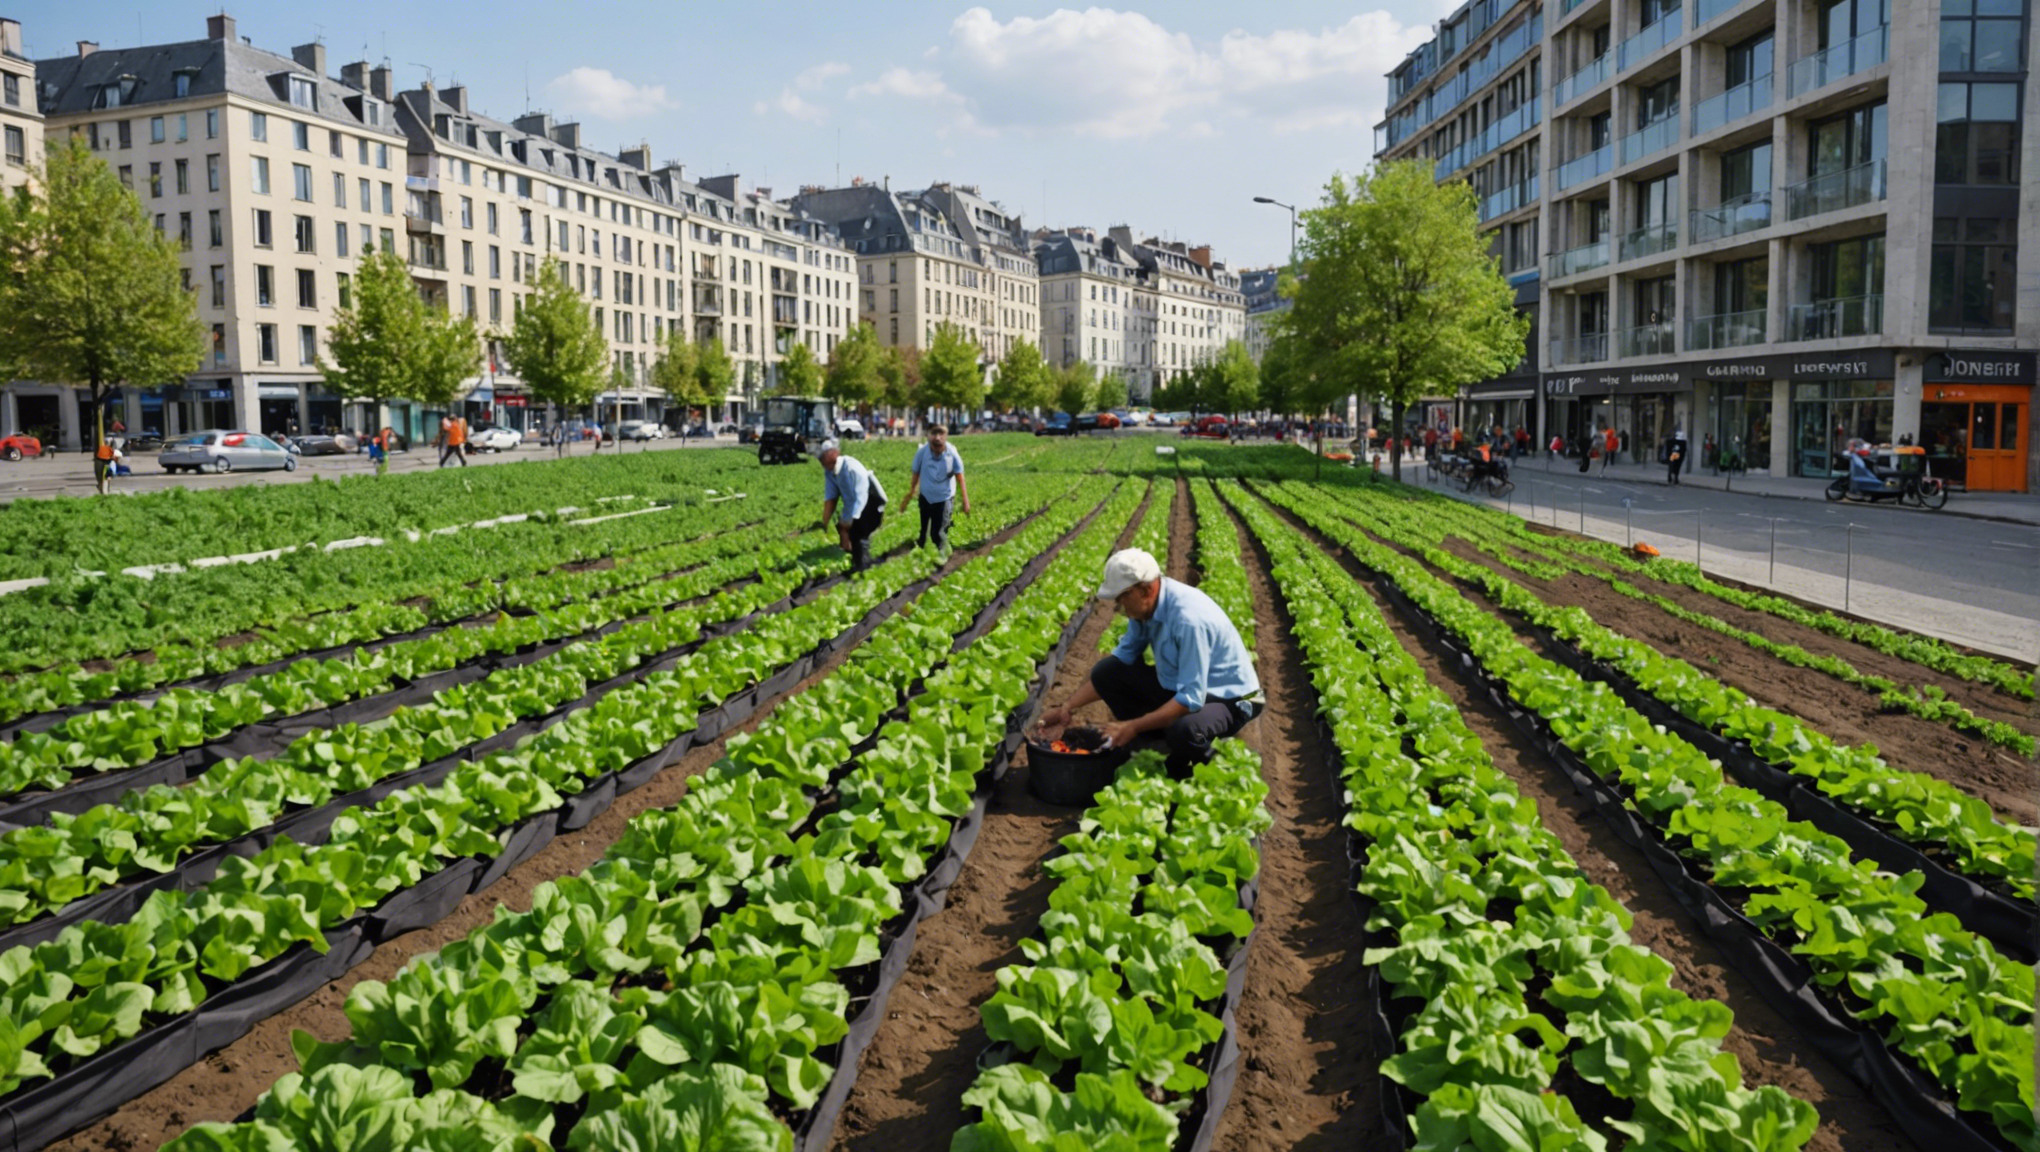 découvrez comment intégrer facilement l'agriculture urbaine dans votre quotidien et améliorer ainsi votre qualité de vie au quotidien.